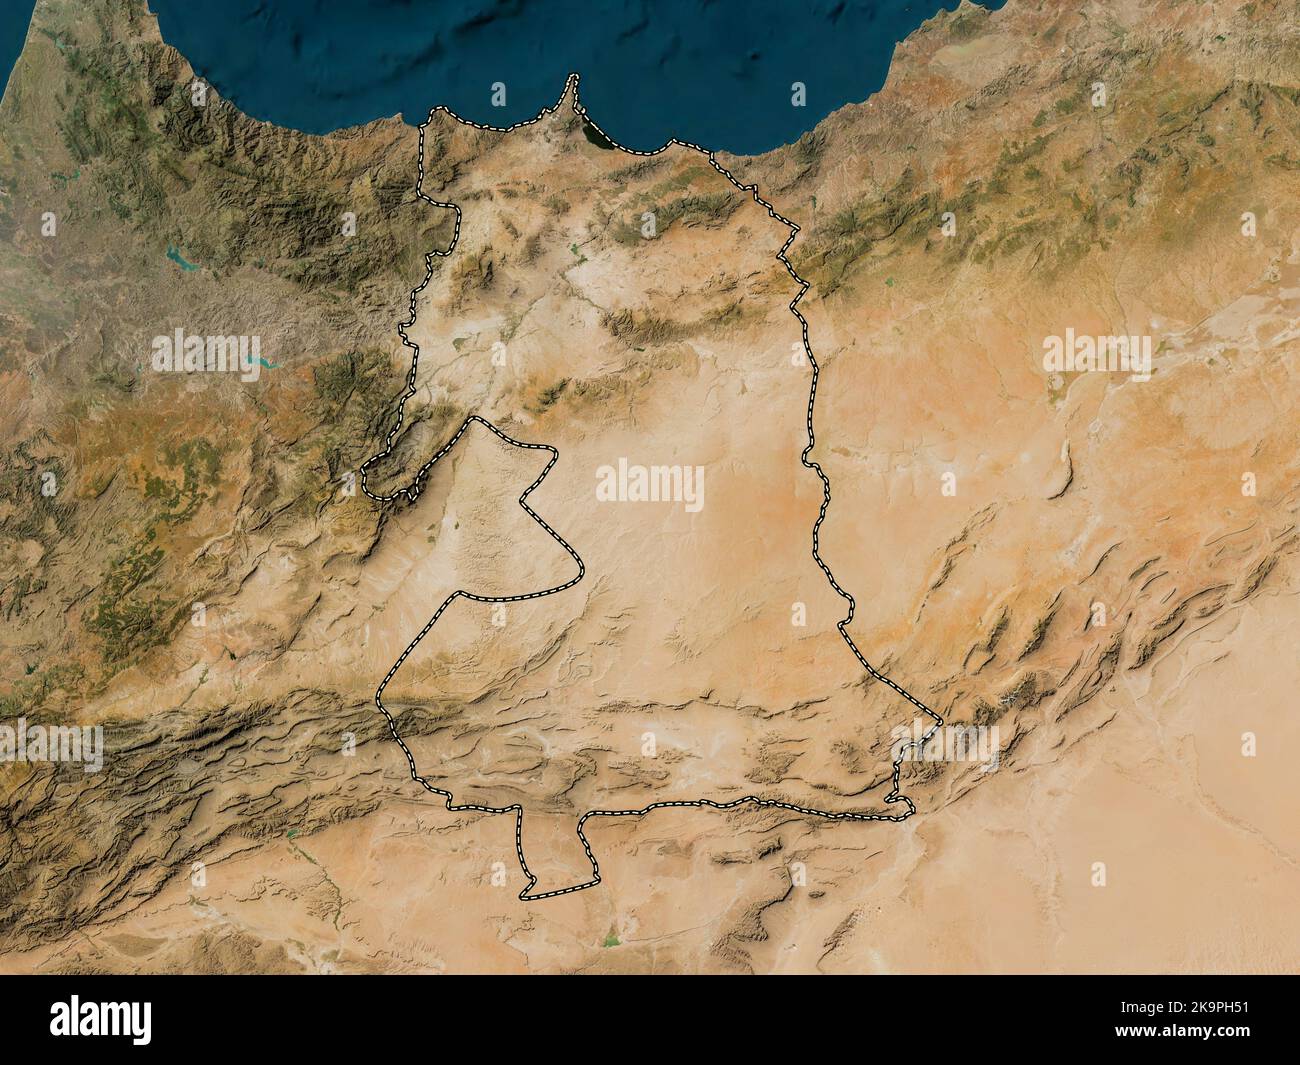 Orientale, région du Maroc. Carte satellite basse résolution Banque D'Images